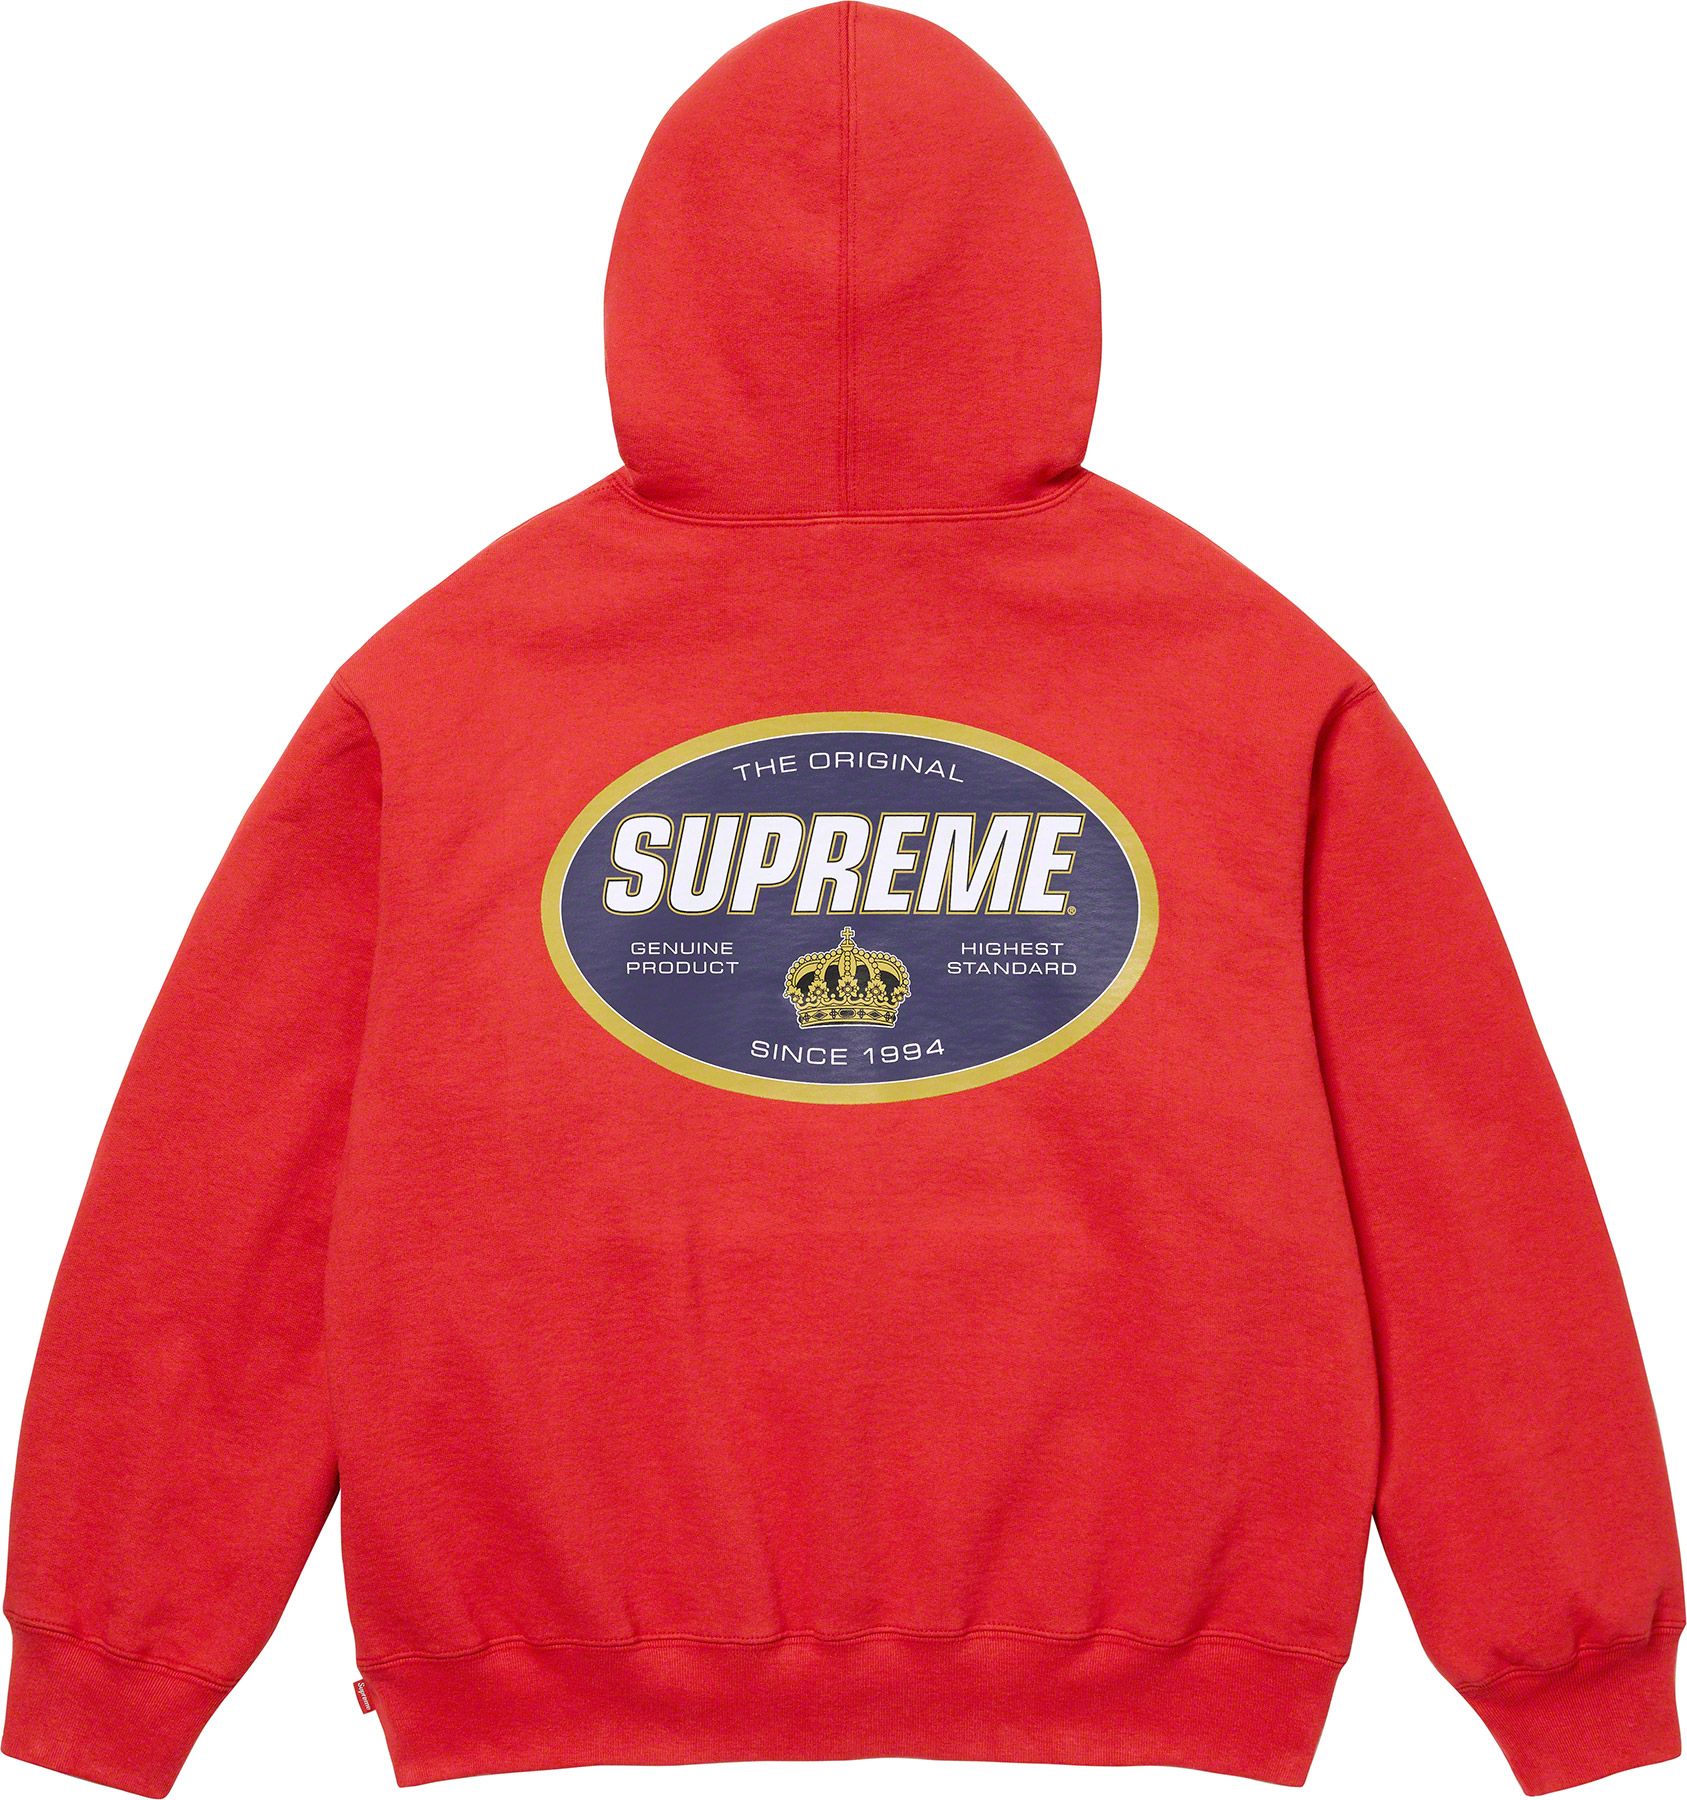 S Logo Zip Up Hooded Sweatshirt - Supreme